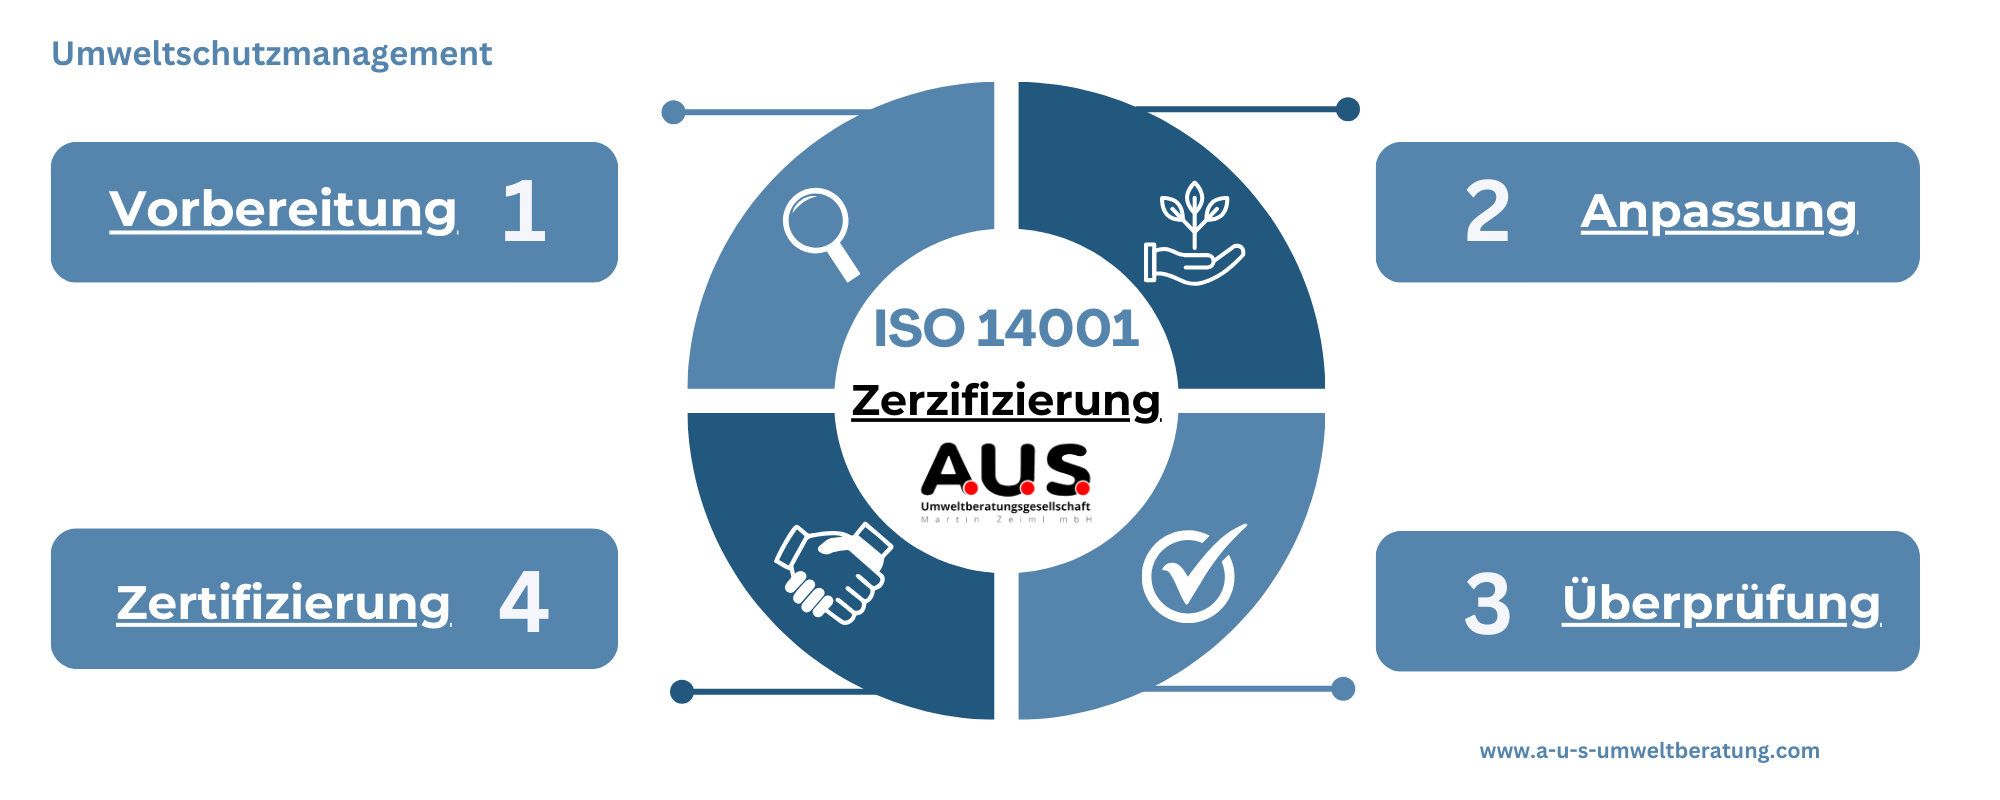 A.U.S. ISO 45001 Zerifizierung